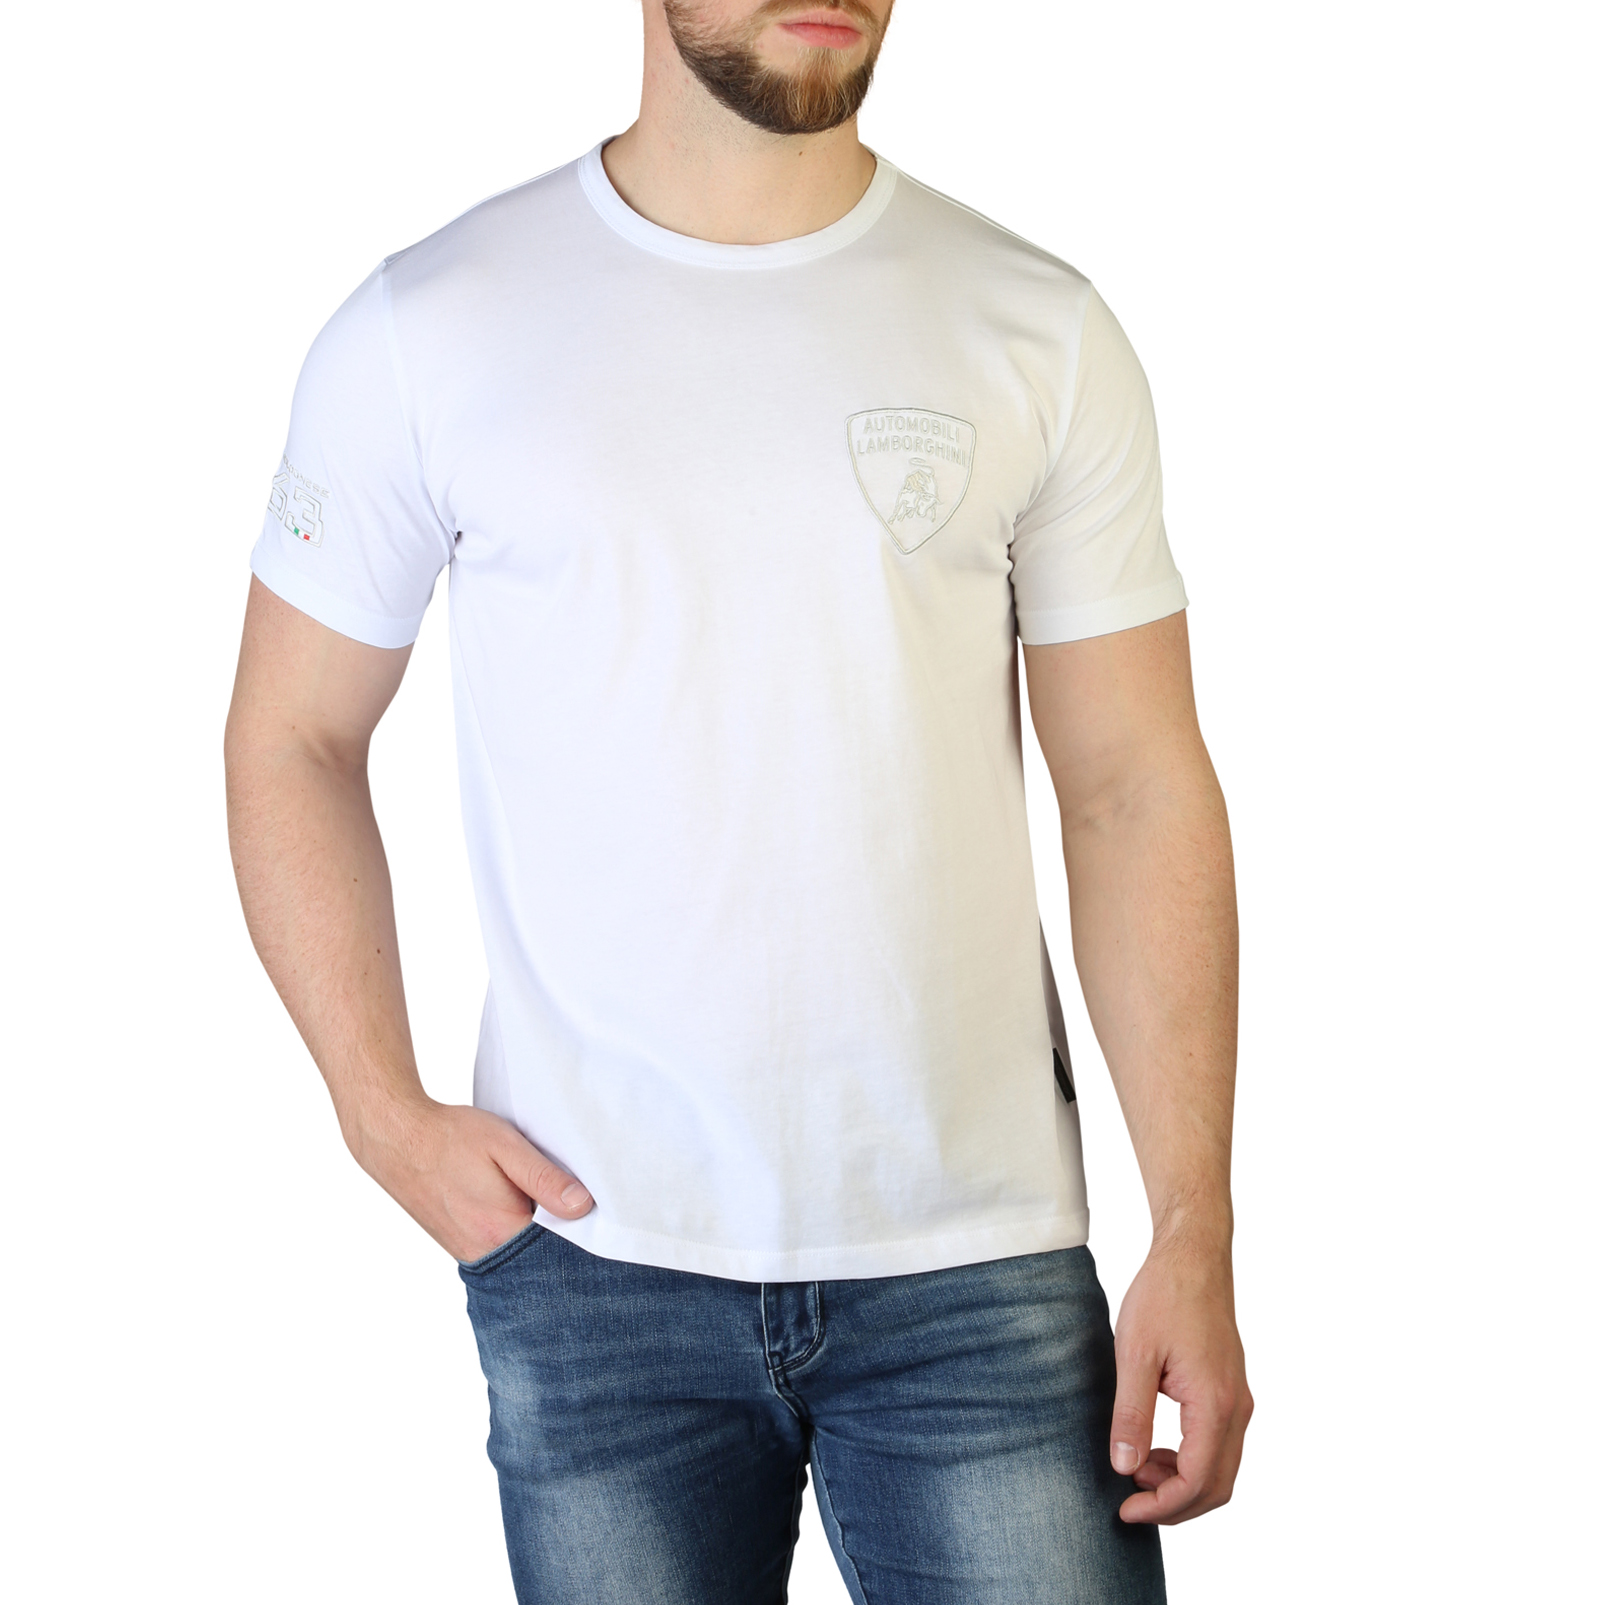 Lamborghini White T-shirts for Men - B3XVB7T4